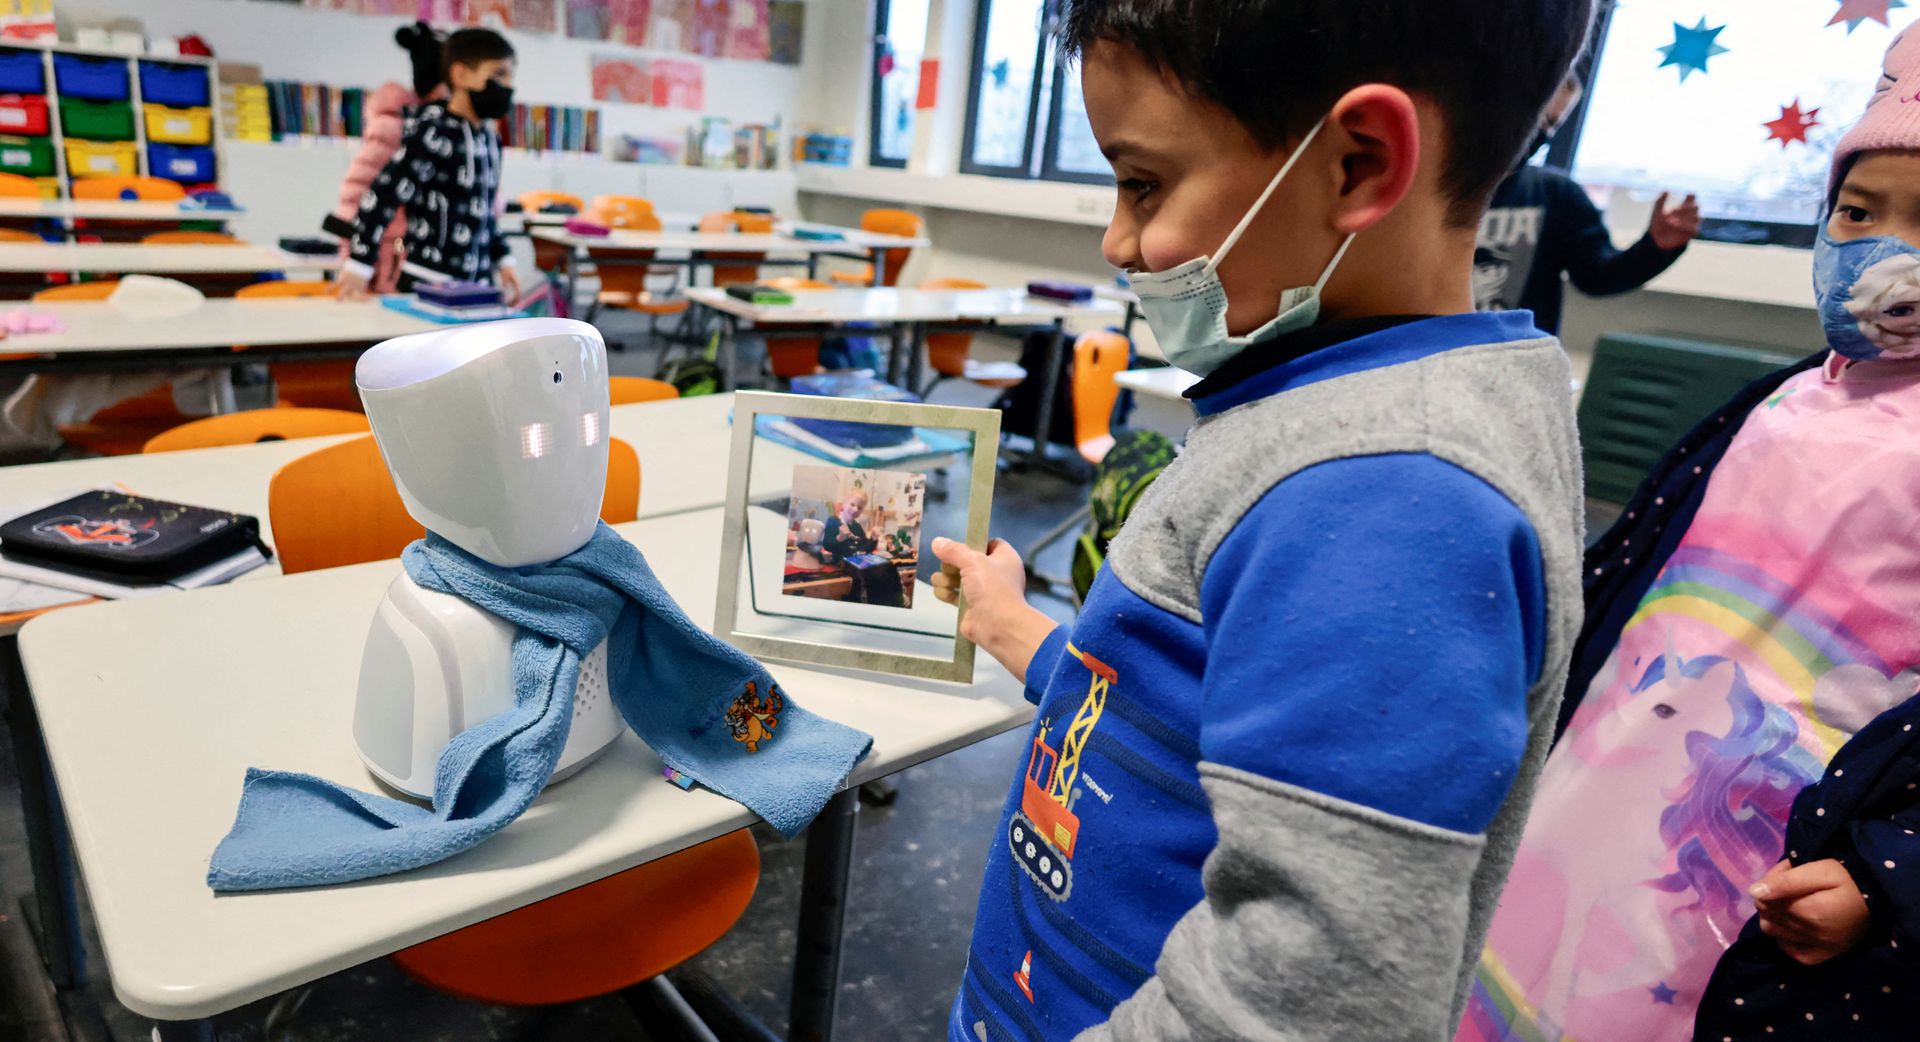 روبوت يذهب إلى المدرسة بدلا من طفل مريض